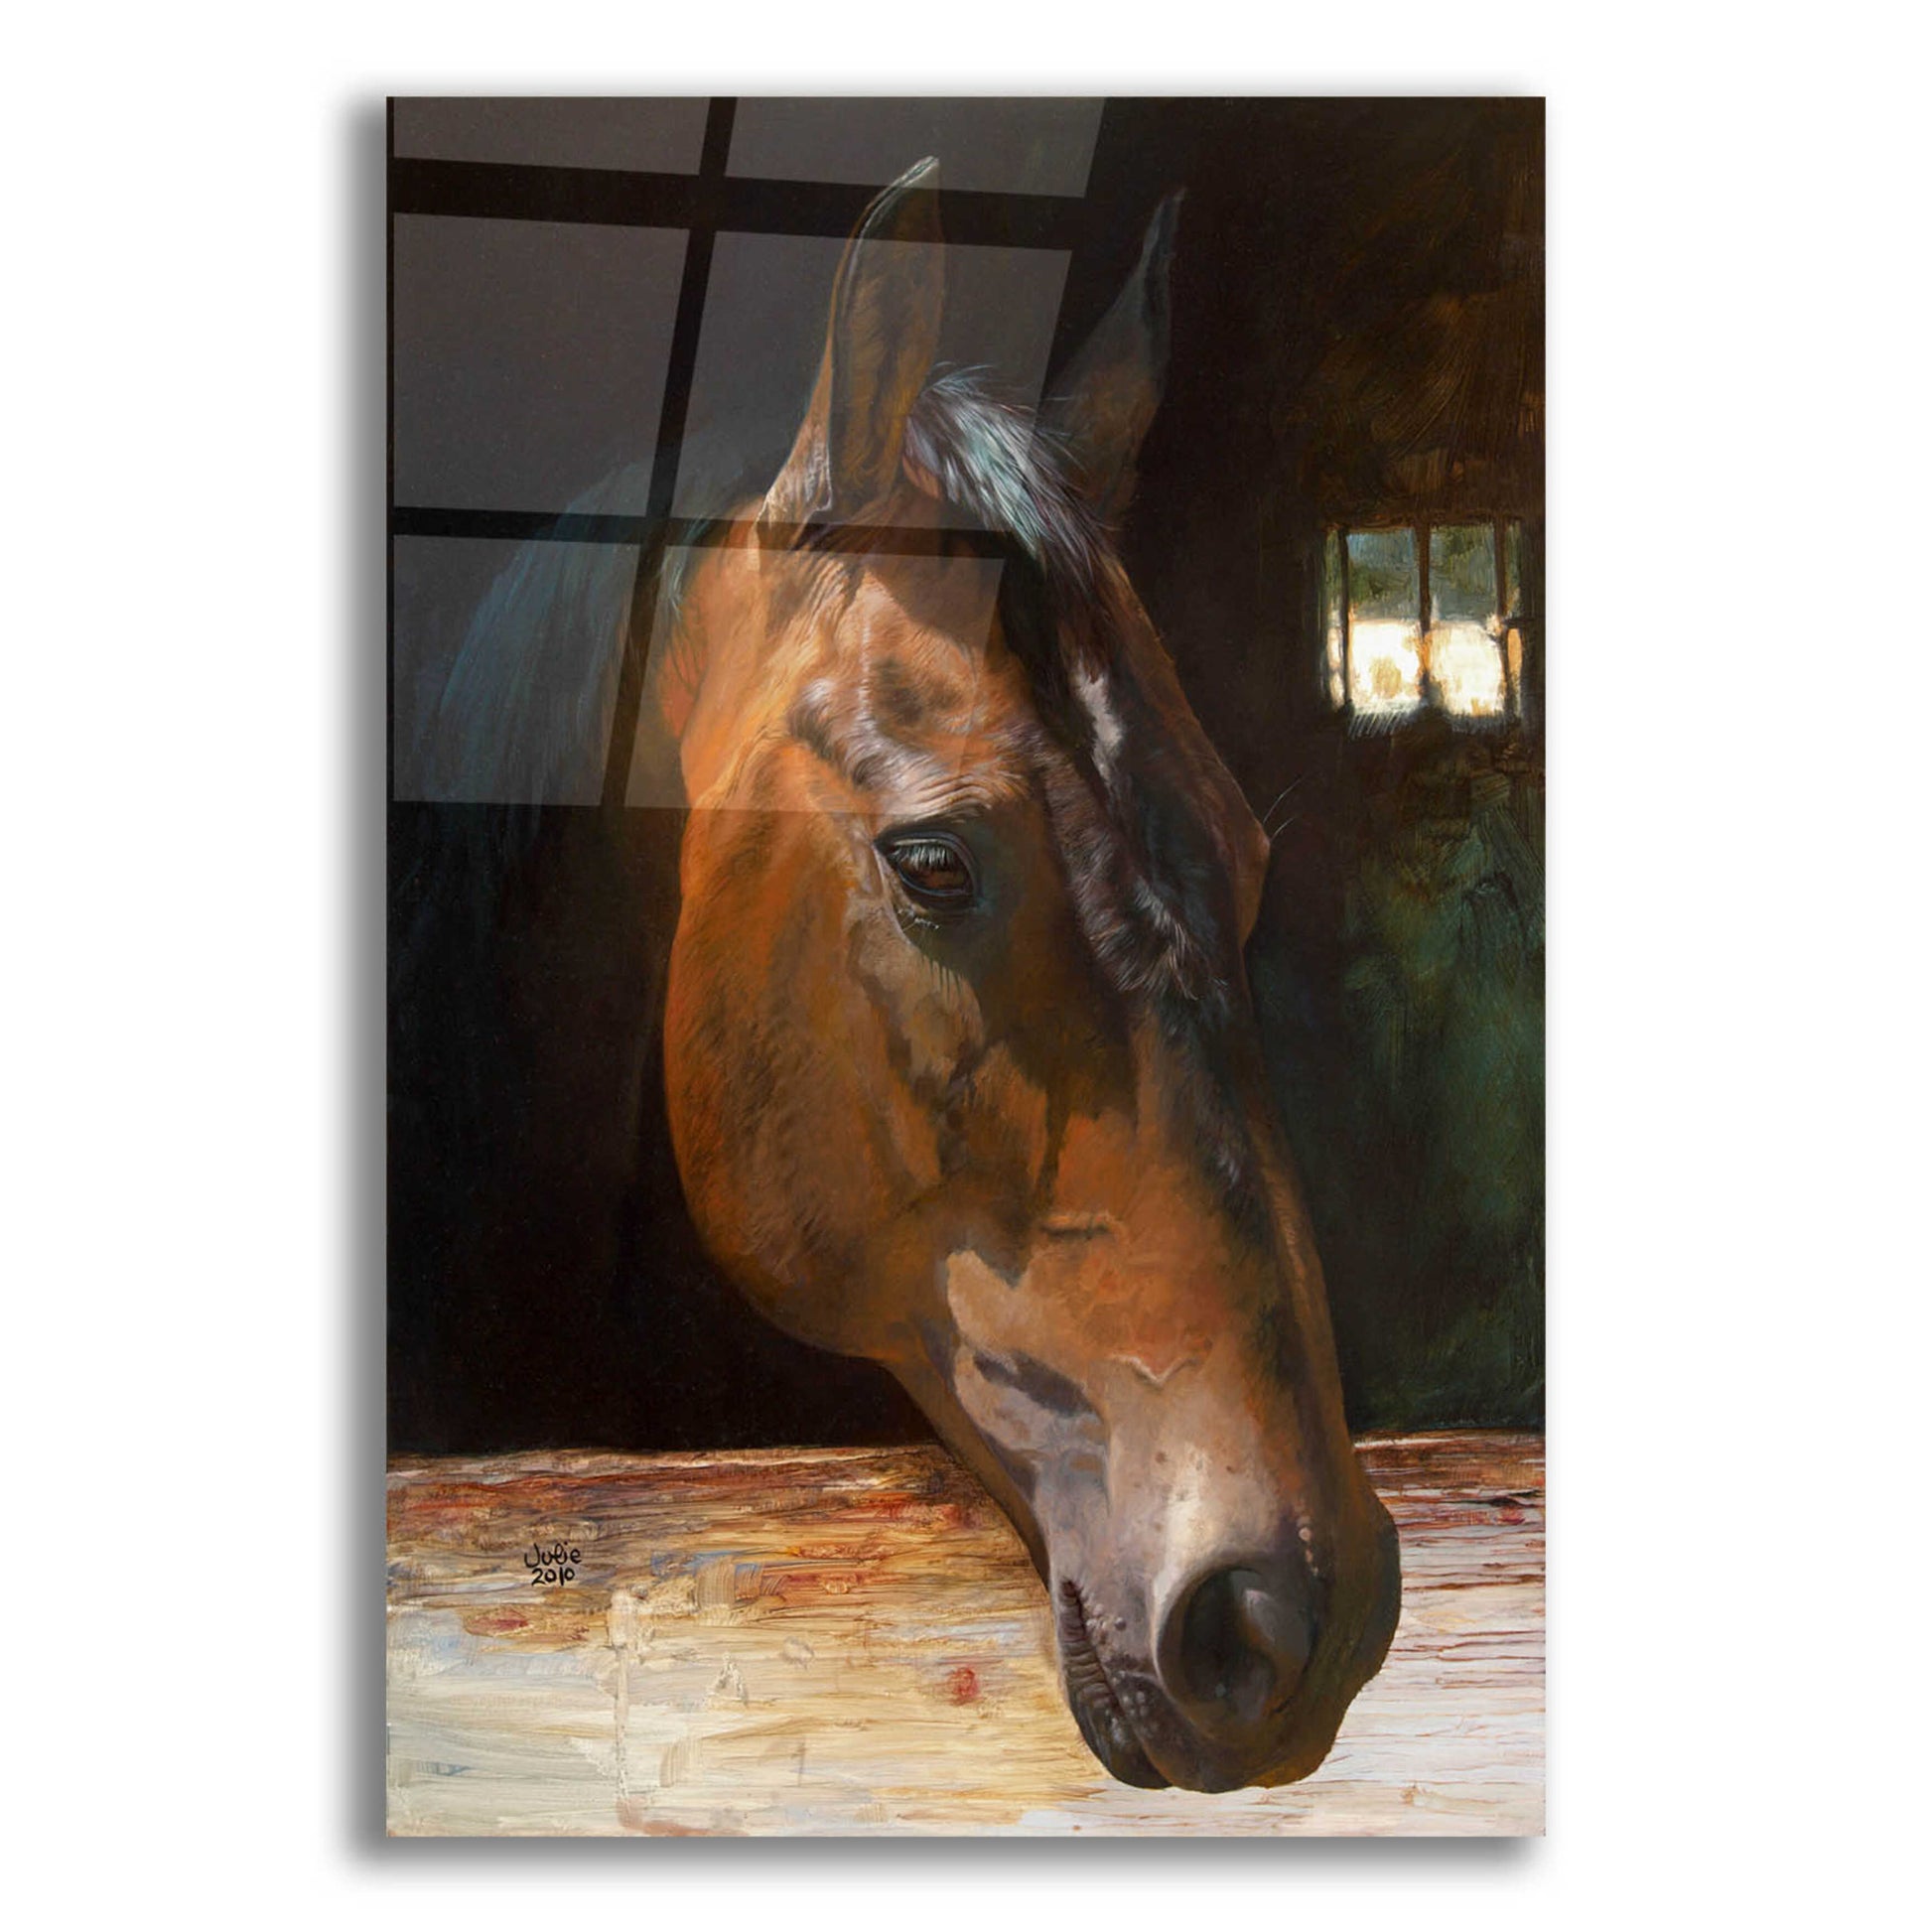 Epic Art 'Quakertown Horse' by Julie Bel, Acrylic Glass Wall Art,12x16